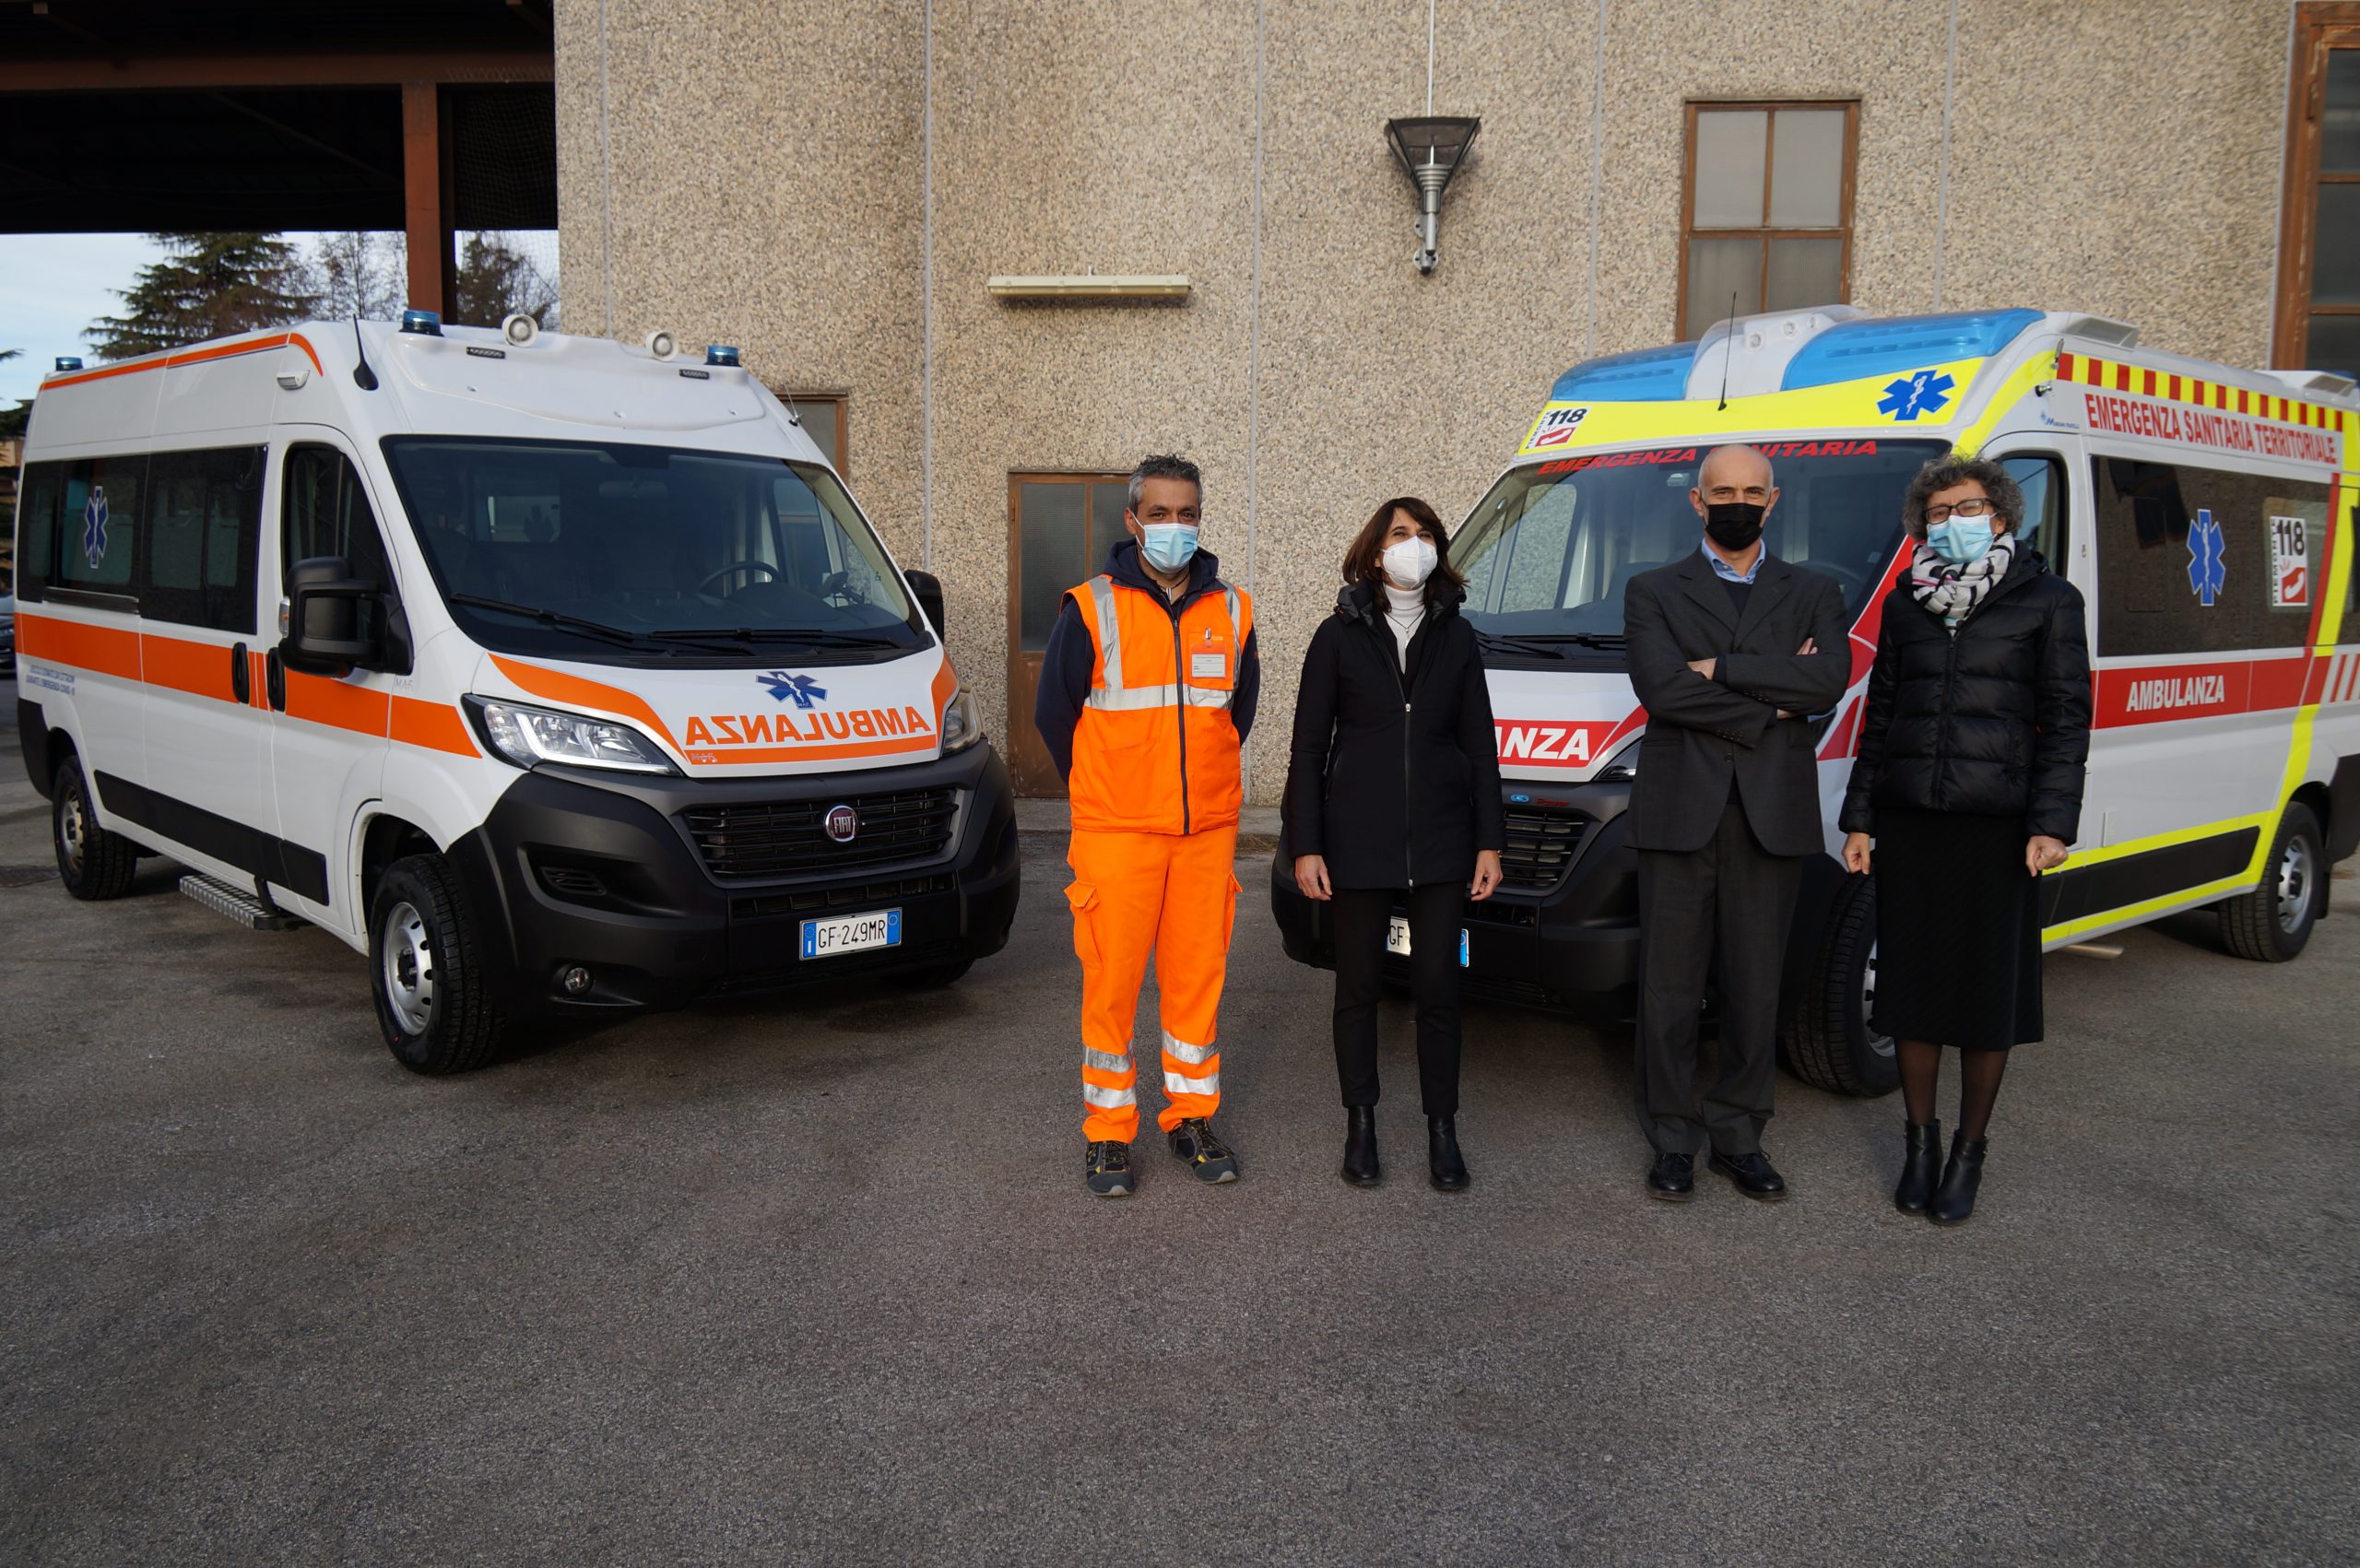 Nuove ambulanze consegnate all'ospedale di Cuneo